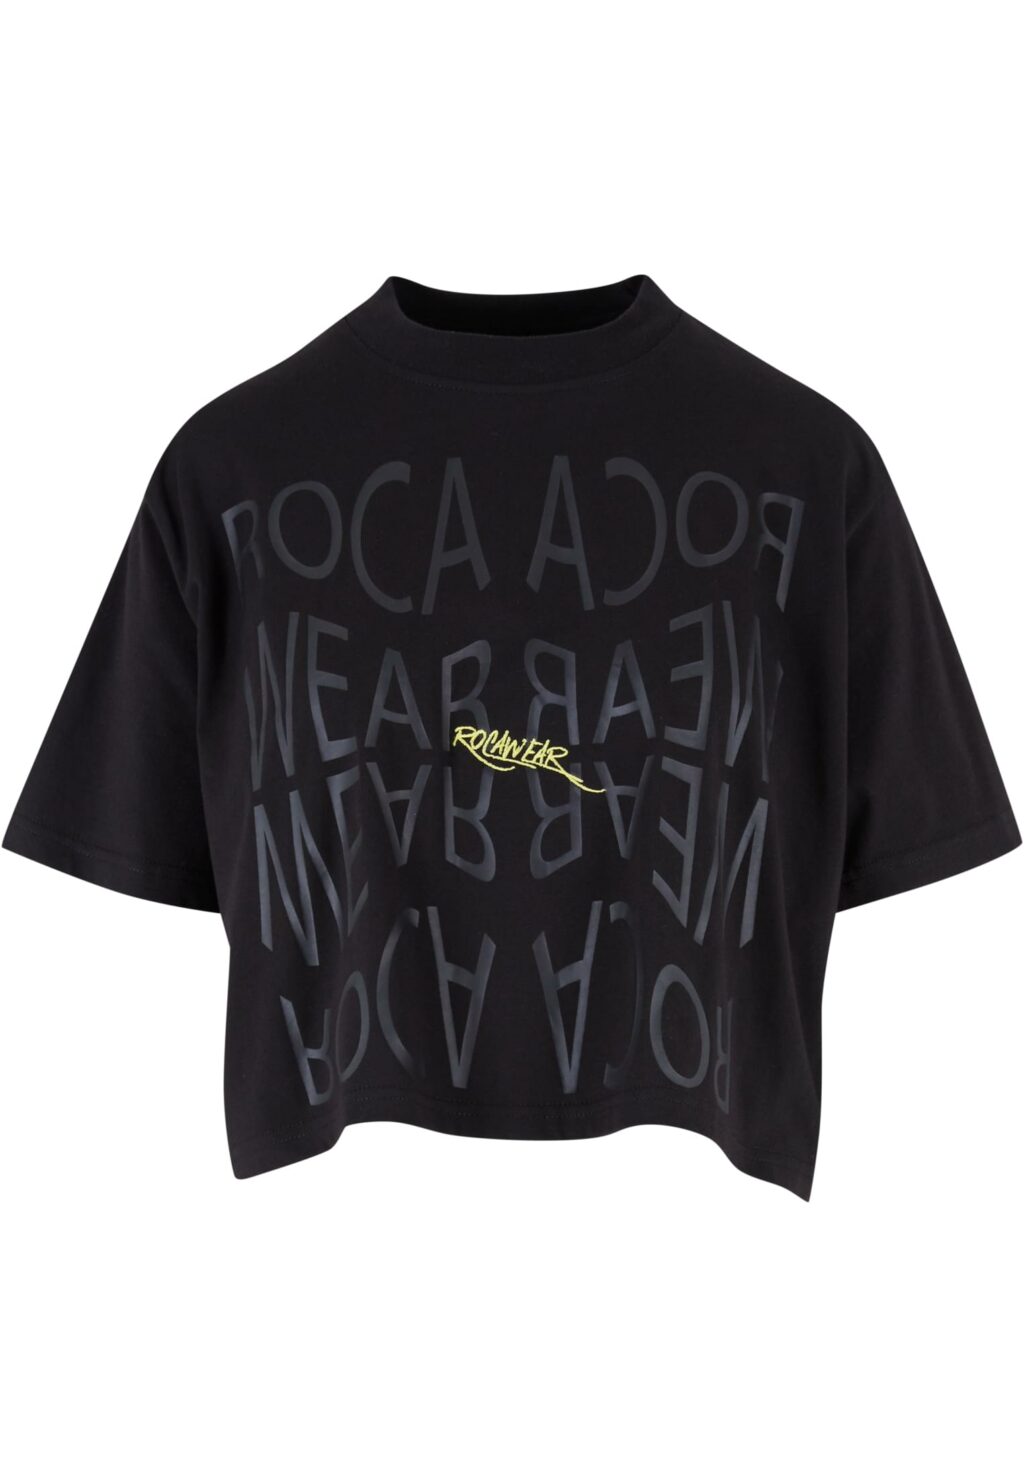 Rocawear Tshirt Backprint black RWLTS005